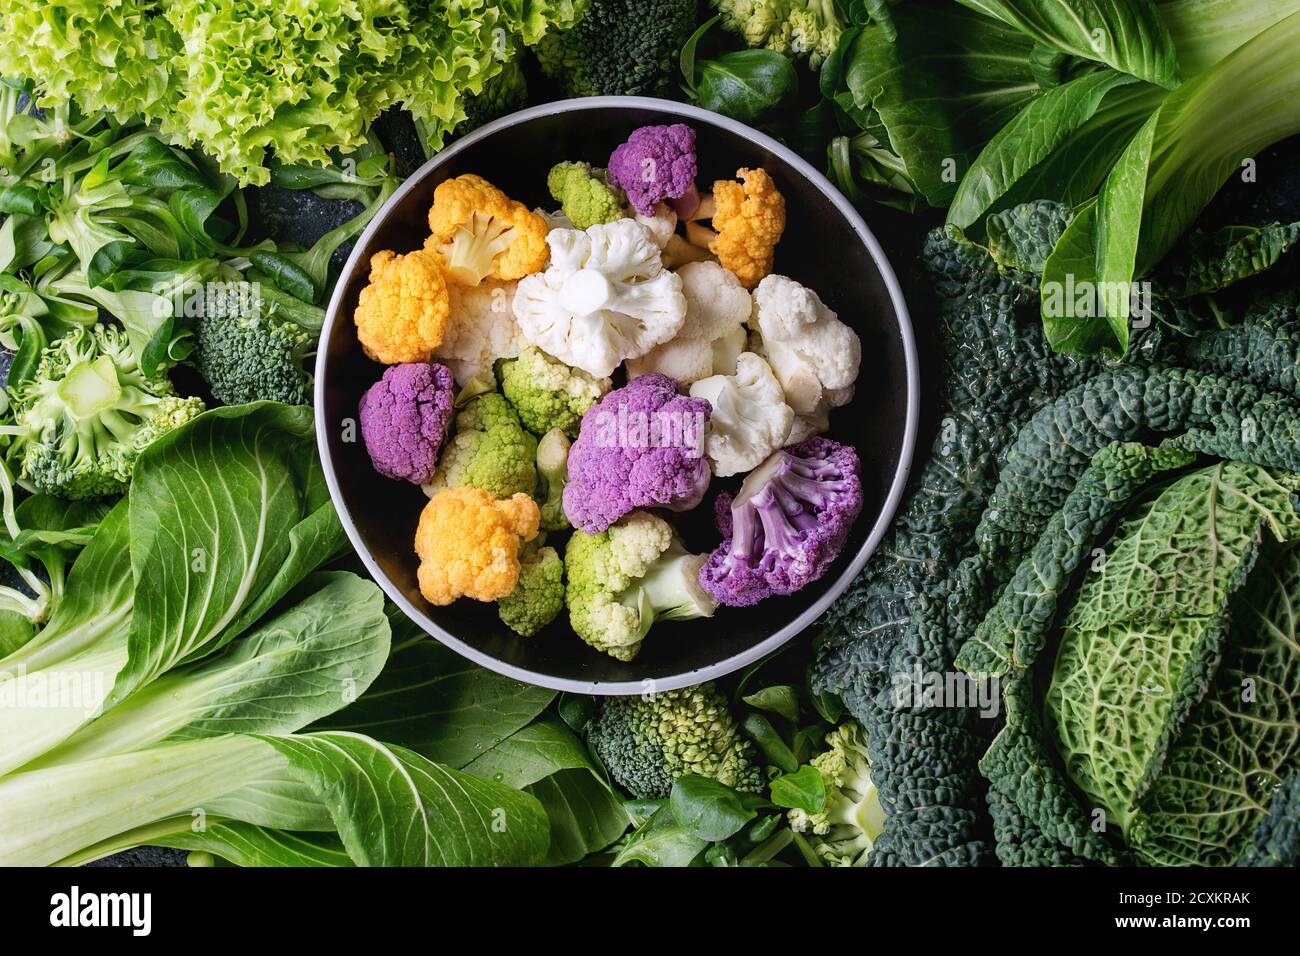 Variété de légumes verts crus des salades, la laitue, le bok choy, maïs, brocoli, chou-fleur jeunes colorés ronds en noir bol. Food backgrou Banque D'Images